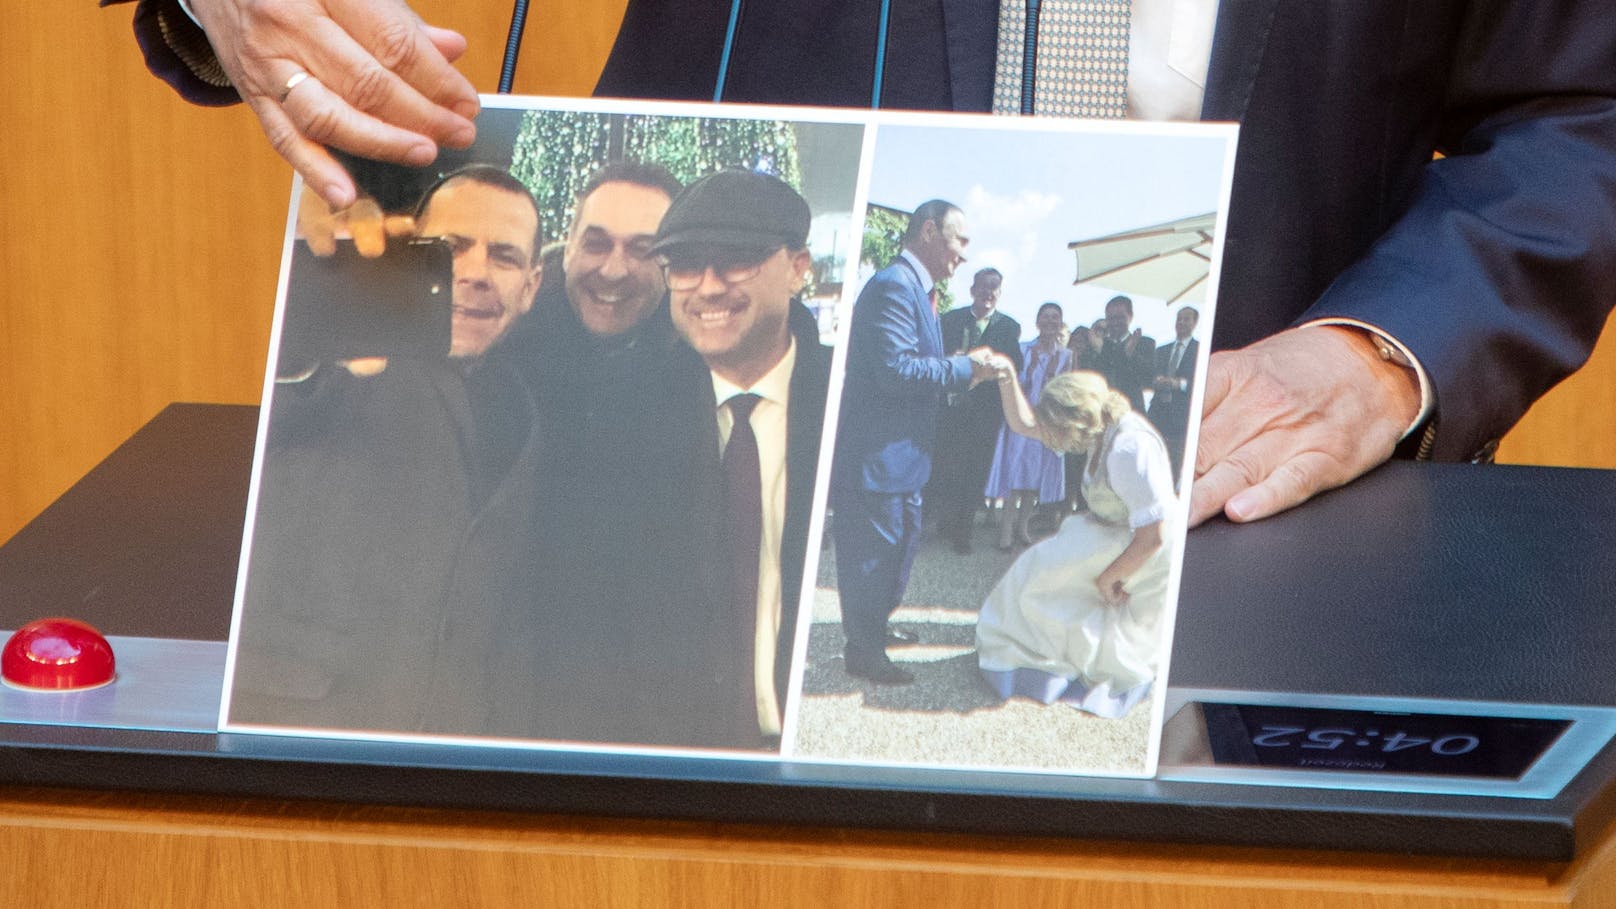 Die blaue Russland-Affinität wurde auch schon im Parlament mit Fotobeweisen kritisiert: Vilimsky und die FPÖ-Spitze am Roten Platz während ihres Besuchs bei der Putin-Partei 2016 in Moskau; sowie FPÖ-Außenministerin Karin Kneissl bei ihrem Hofknicks vor Putin.